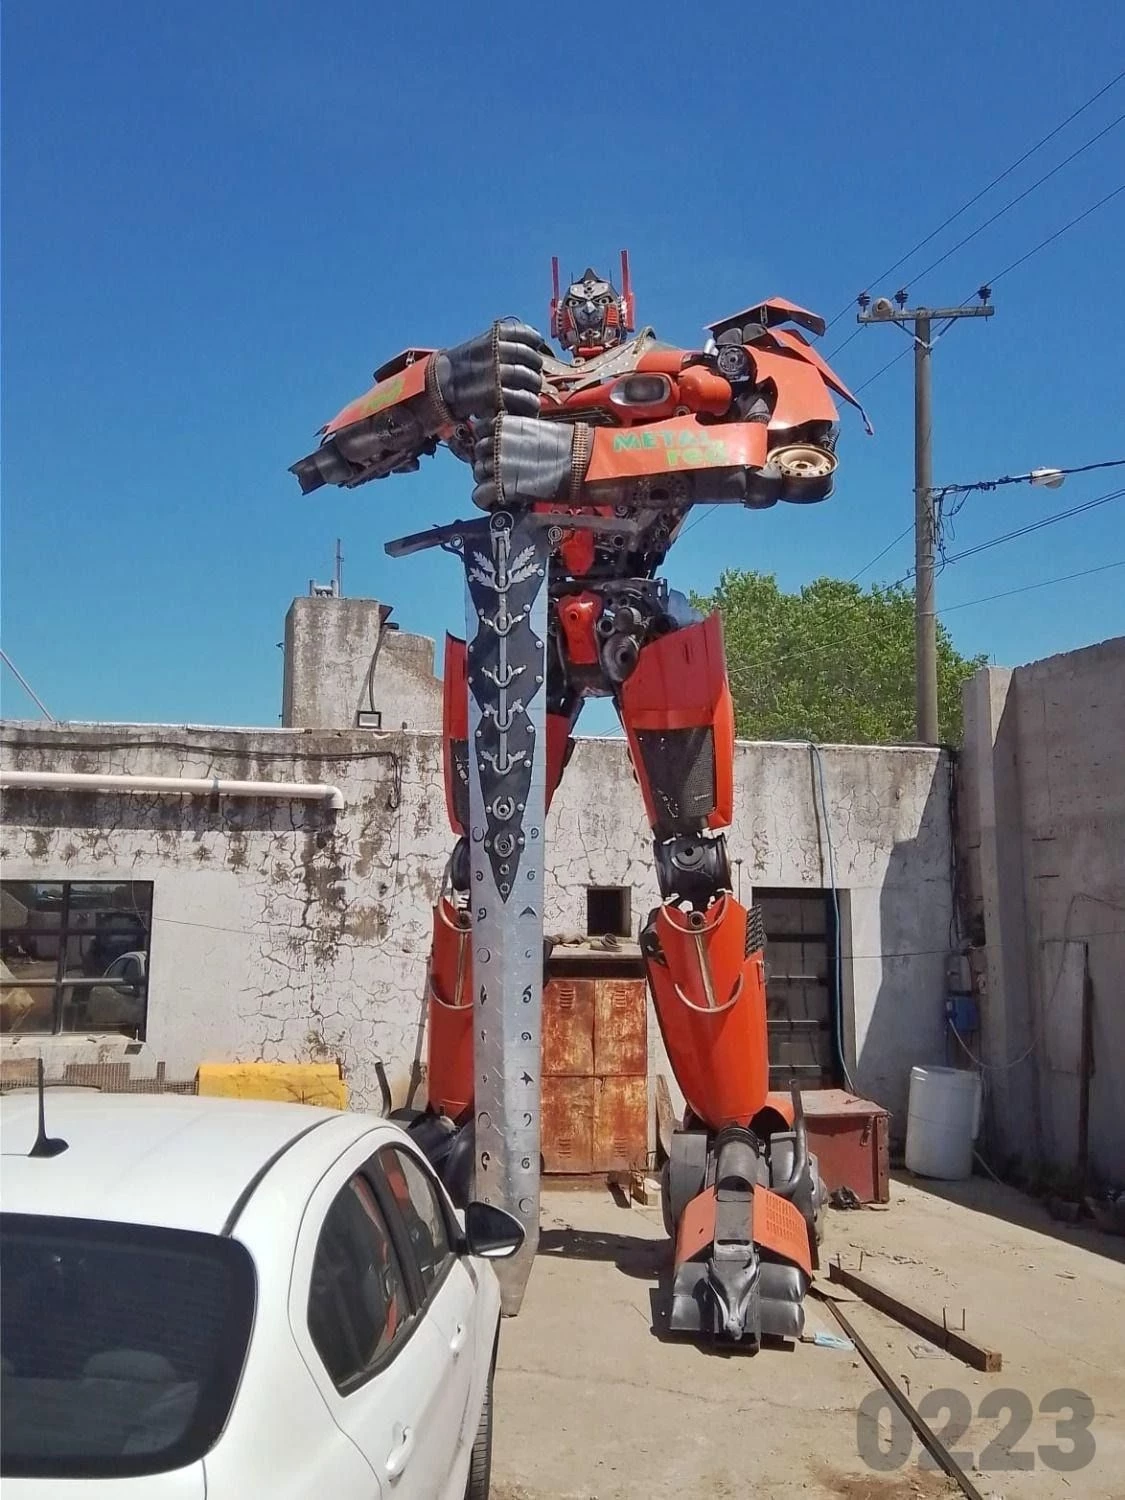 El robot mide 6,5 metros y pesa varios cientos de kilos. Foto:0223